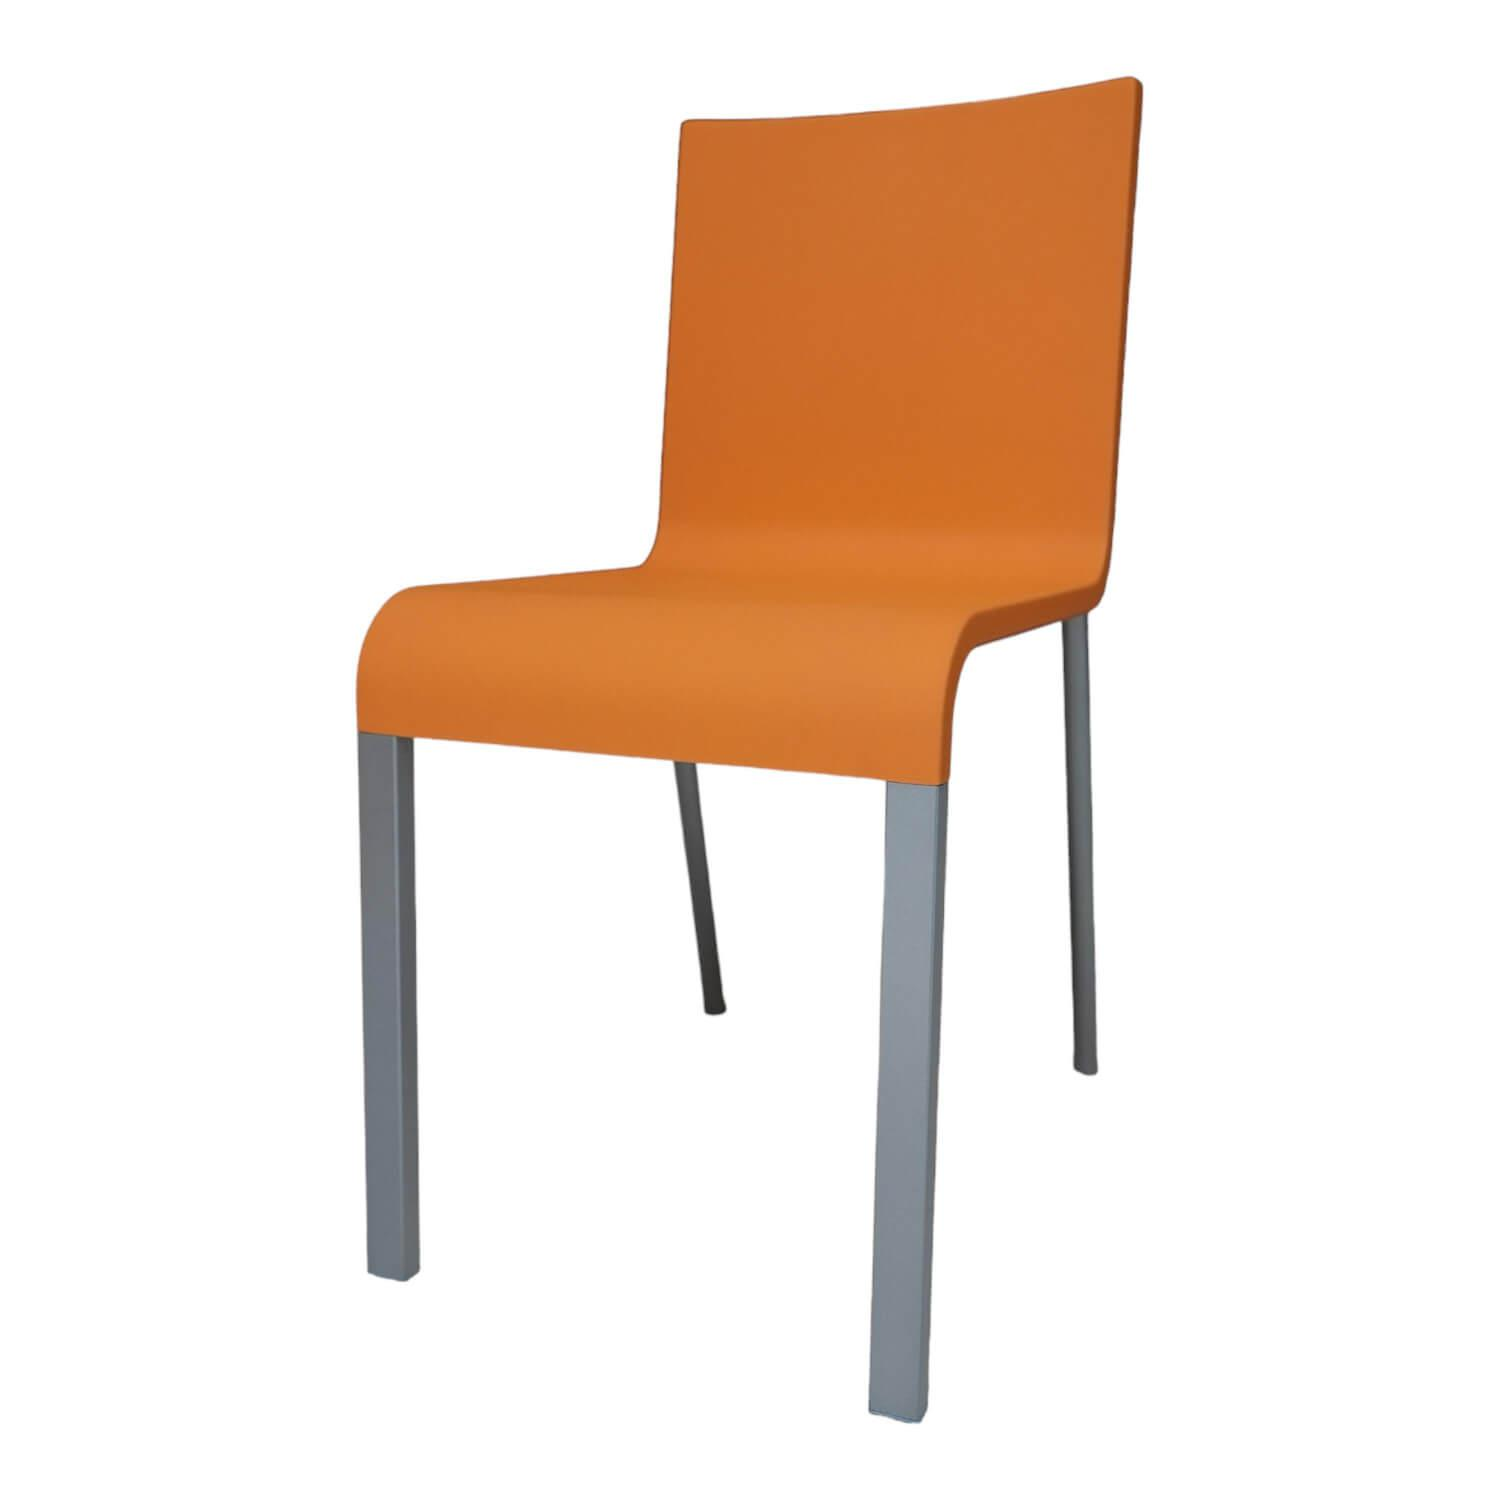 Stuhl 03 Sitzschalenfarbe Mango Untergestell Pulverbeschichtet Silber Glatt